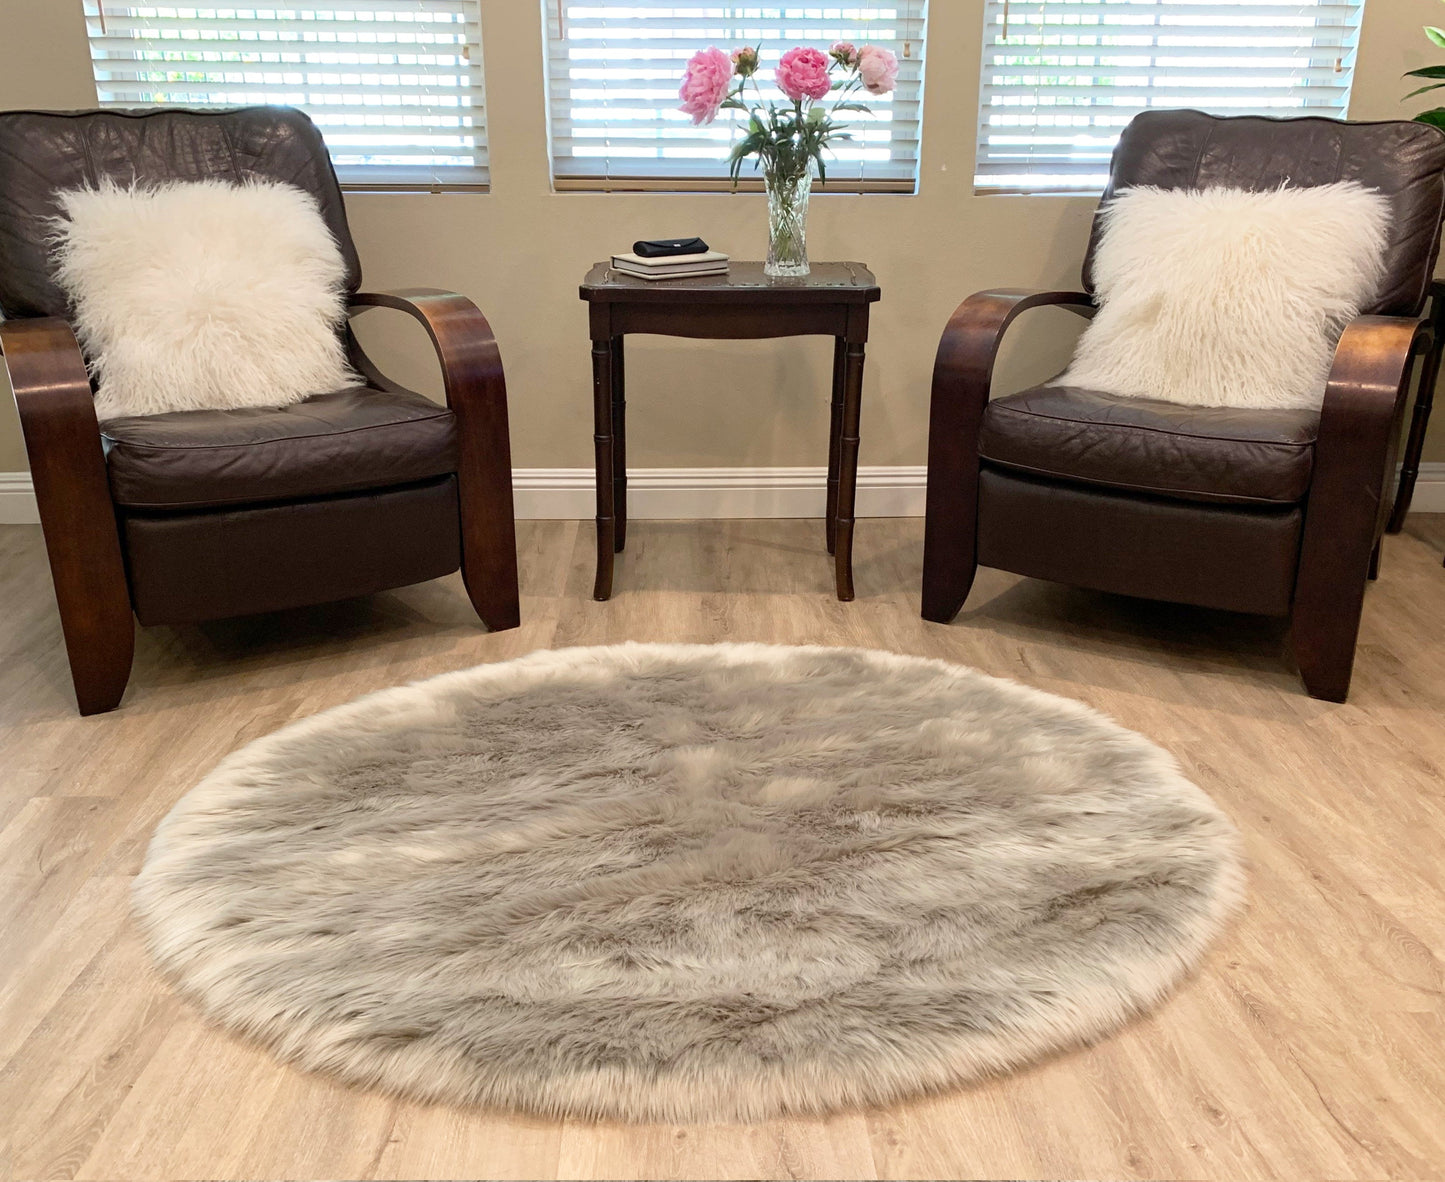 Faux sheepskin rug Oval Shaped 3'X5' (90cm x 150cm)